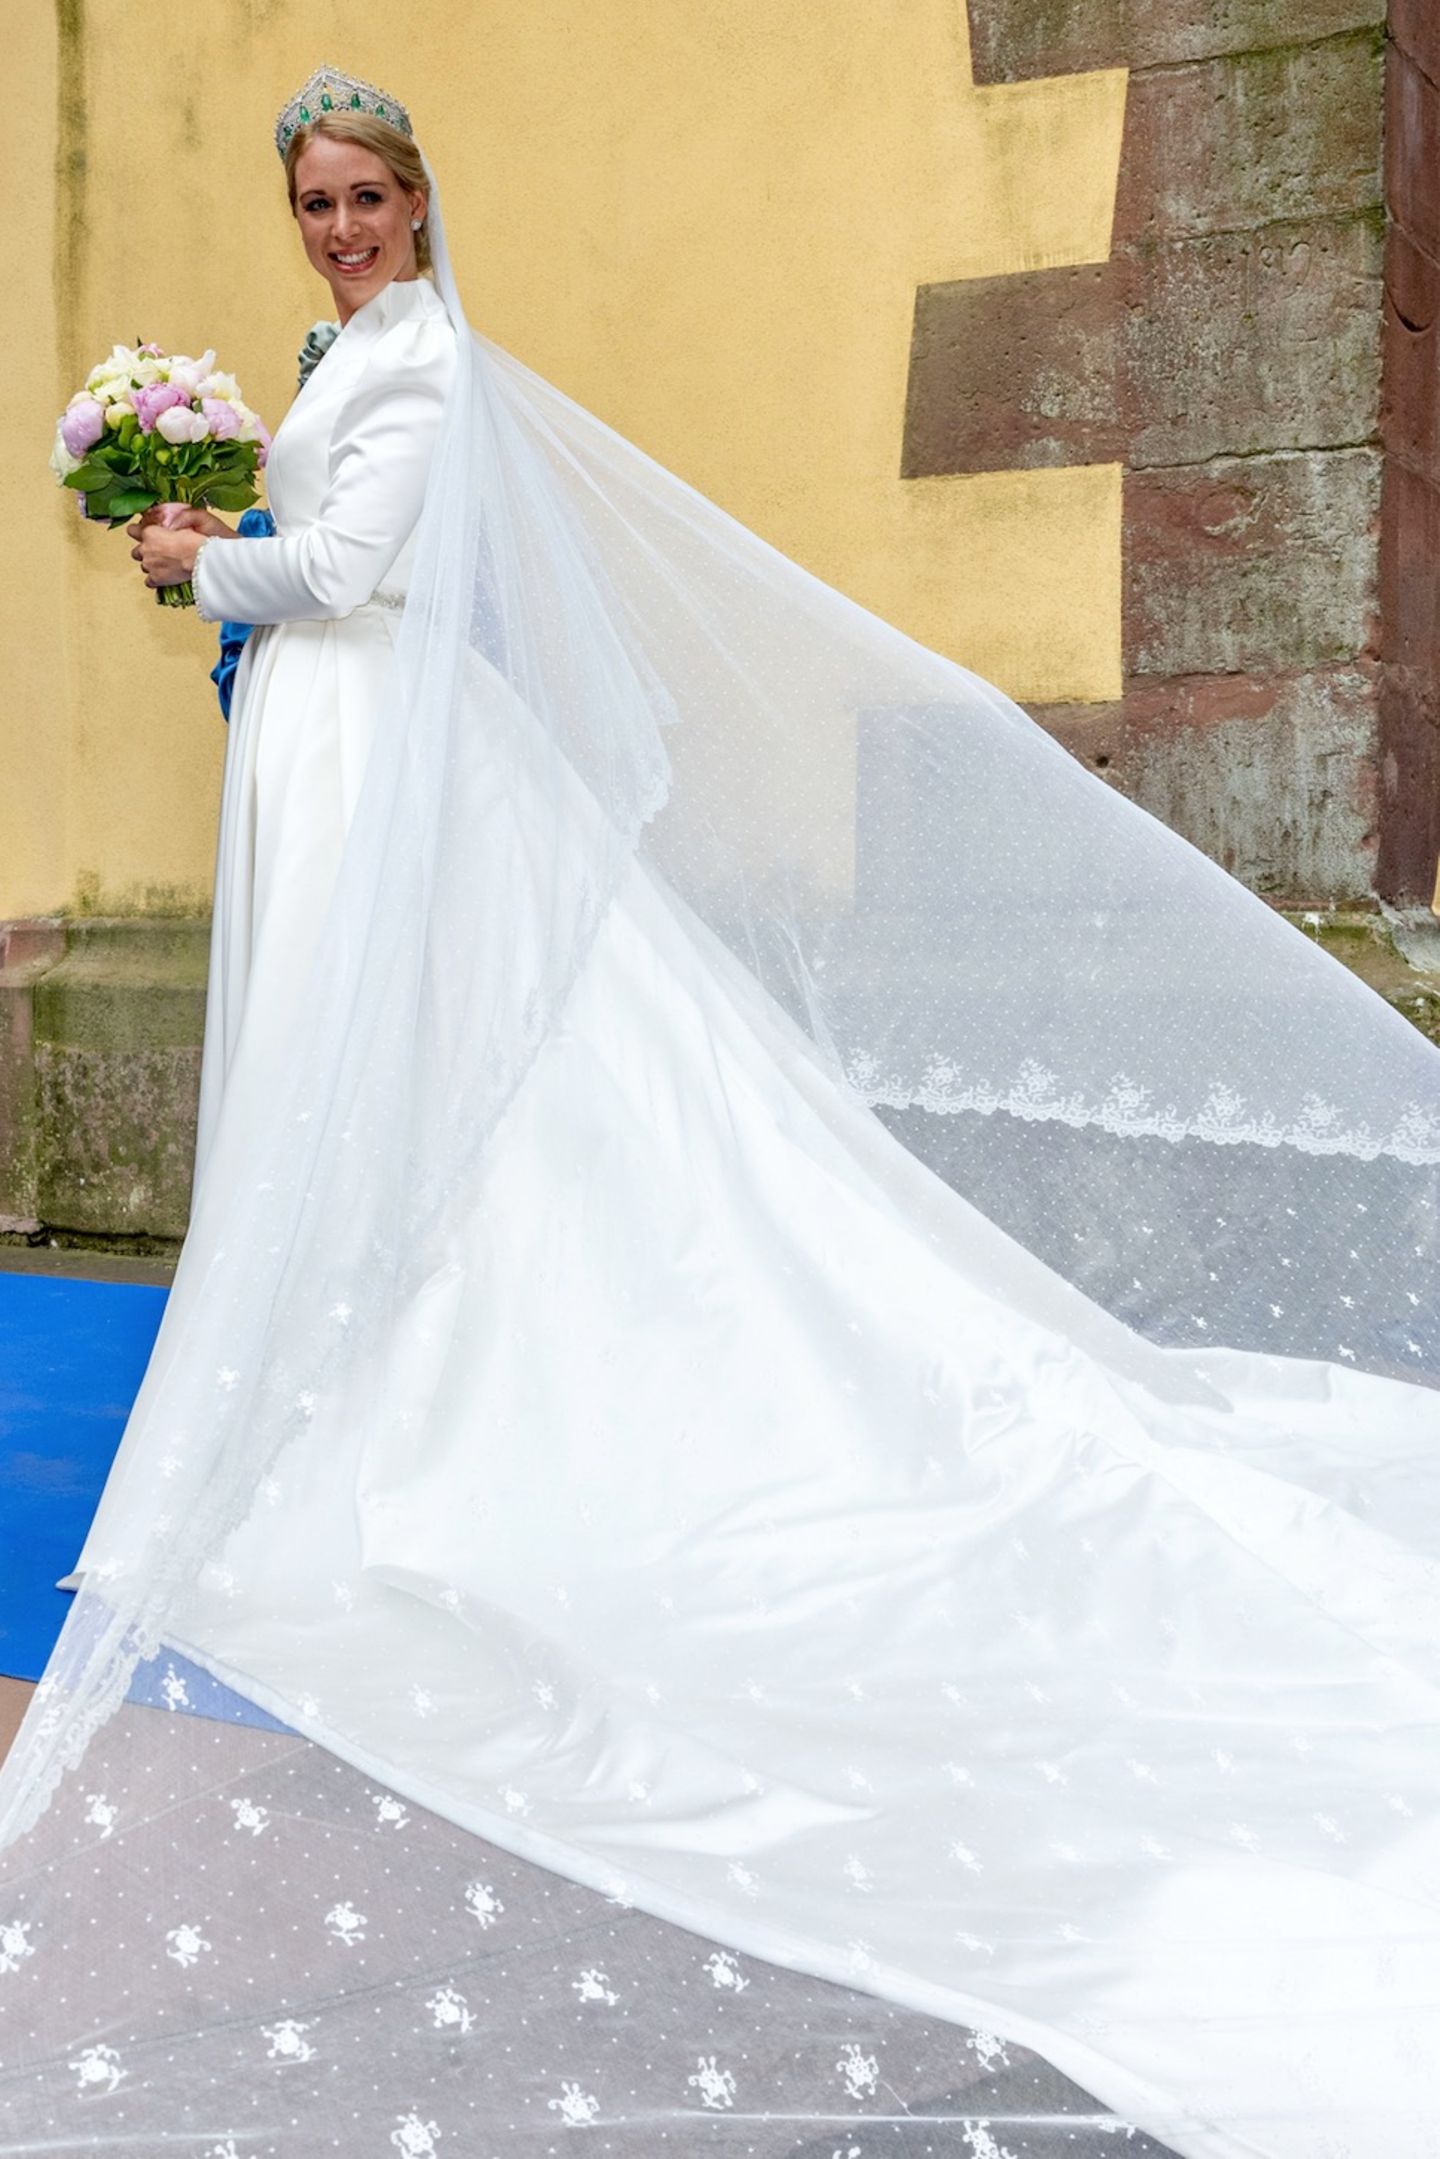 Für die Hochzeit mit ihrem Benedikt wählt Prinzessin Amelie zu Löwenstein-Wertheim-Freudenberg ein weißes Brautkleid mit XL-Schleppe. Dazu trägt sie ein edles Diadem mit Smaragden und einen Brautstrauß aus rosafarbenenen Pfingstrosen und weißen Rosen.